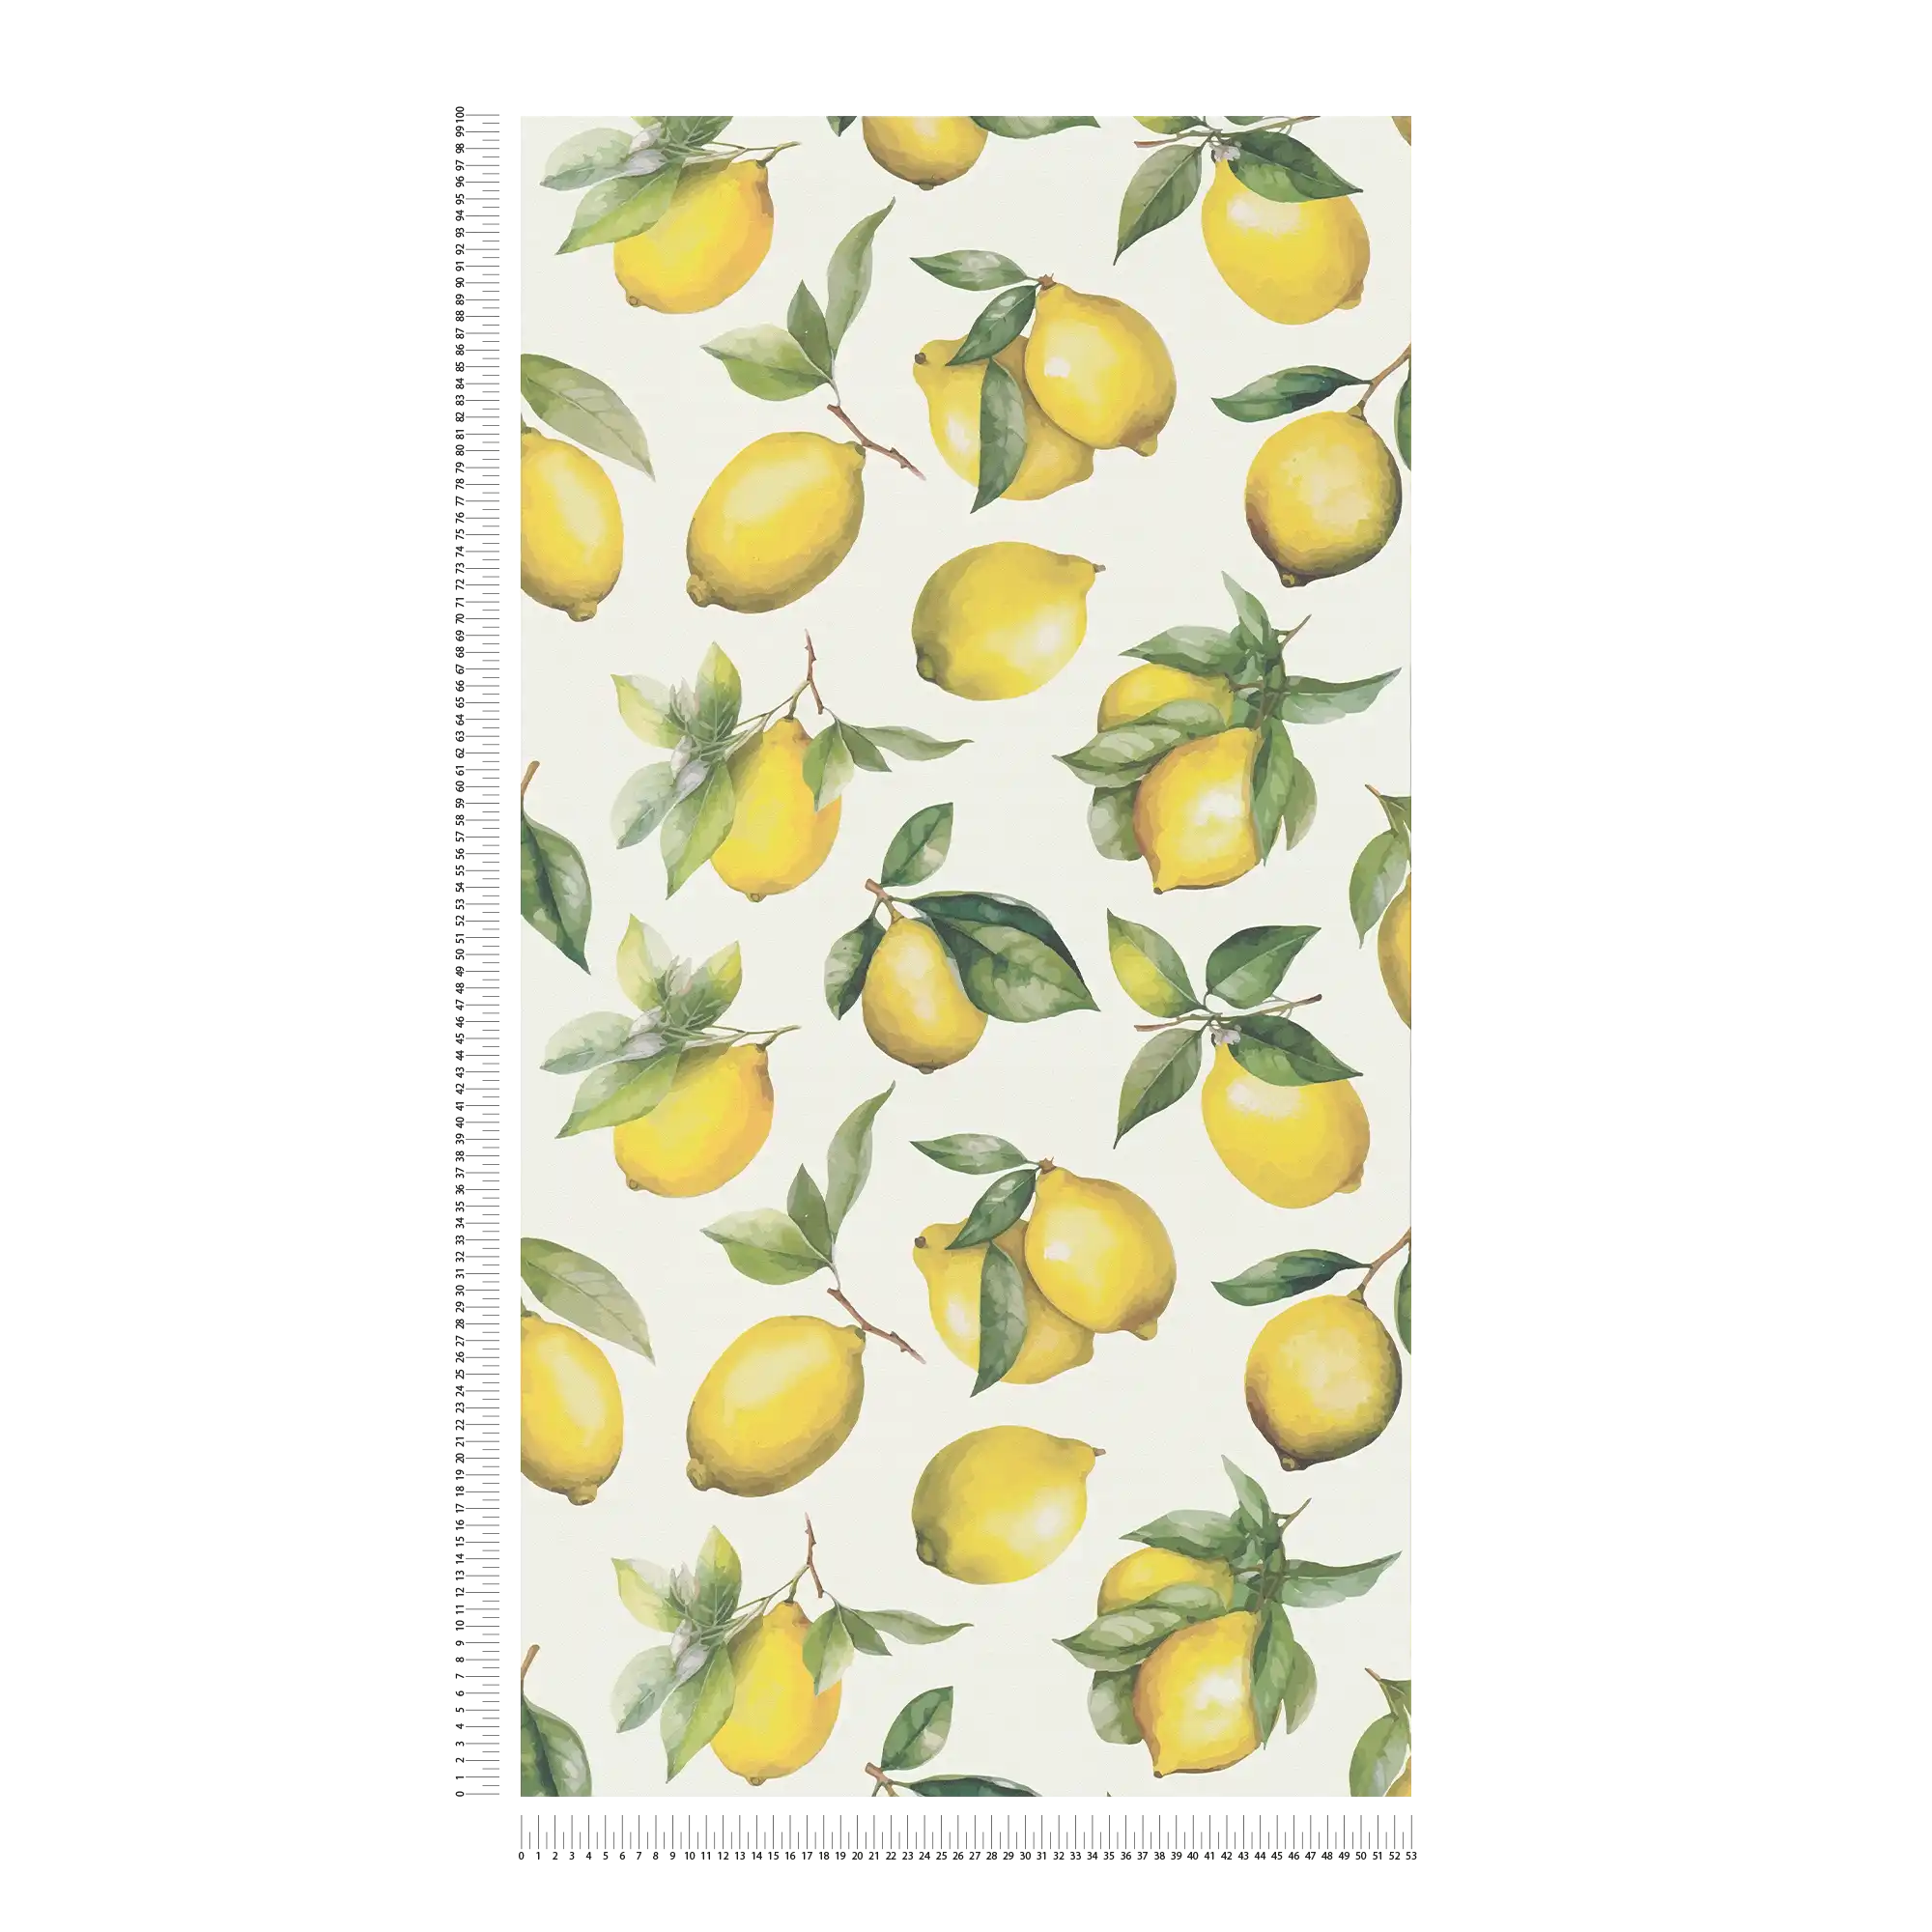             Vliestapete mit gemaltem Zitronen Motiv – weiß, gelb, grün
        